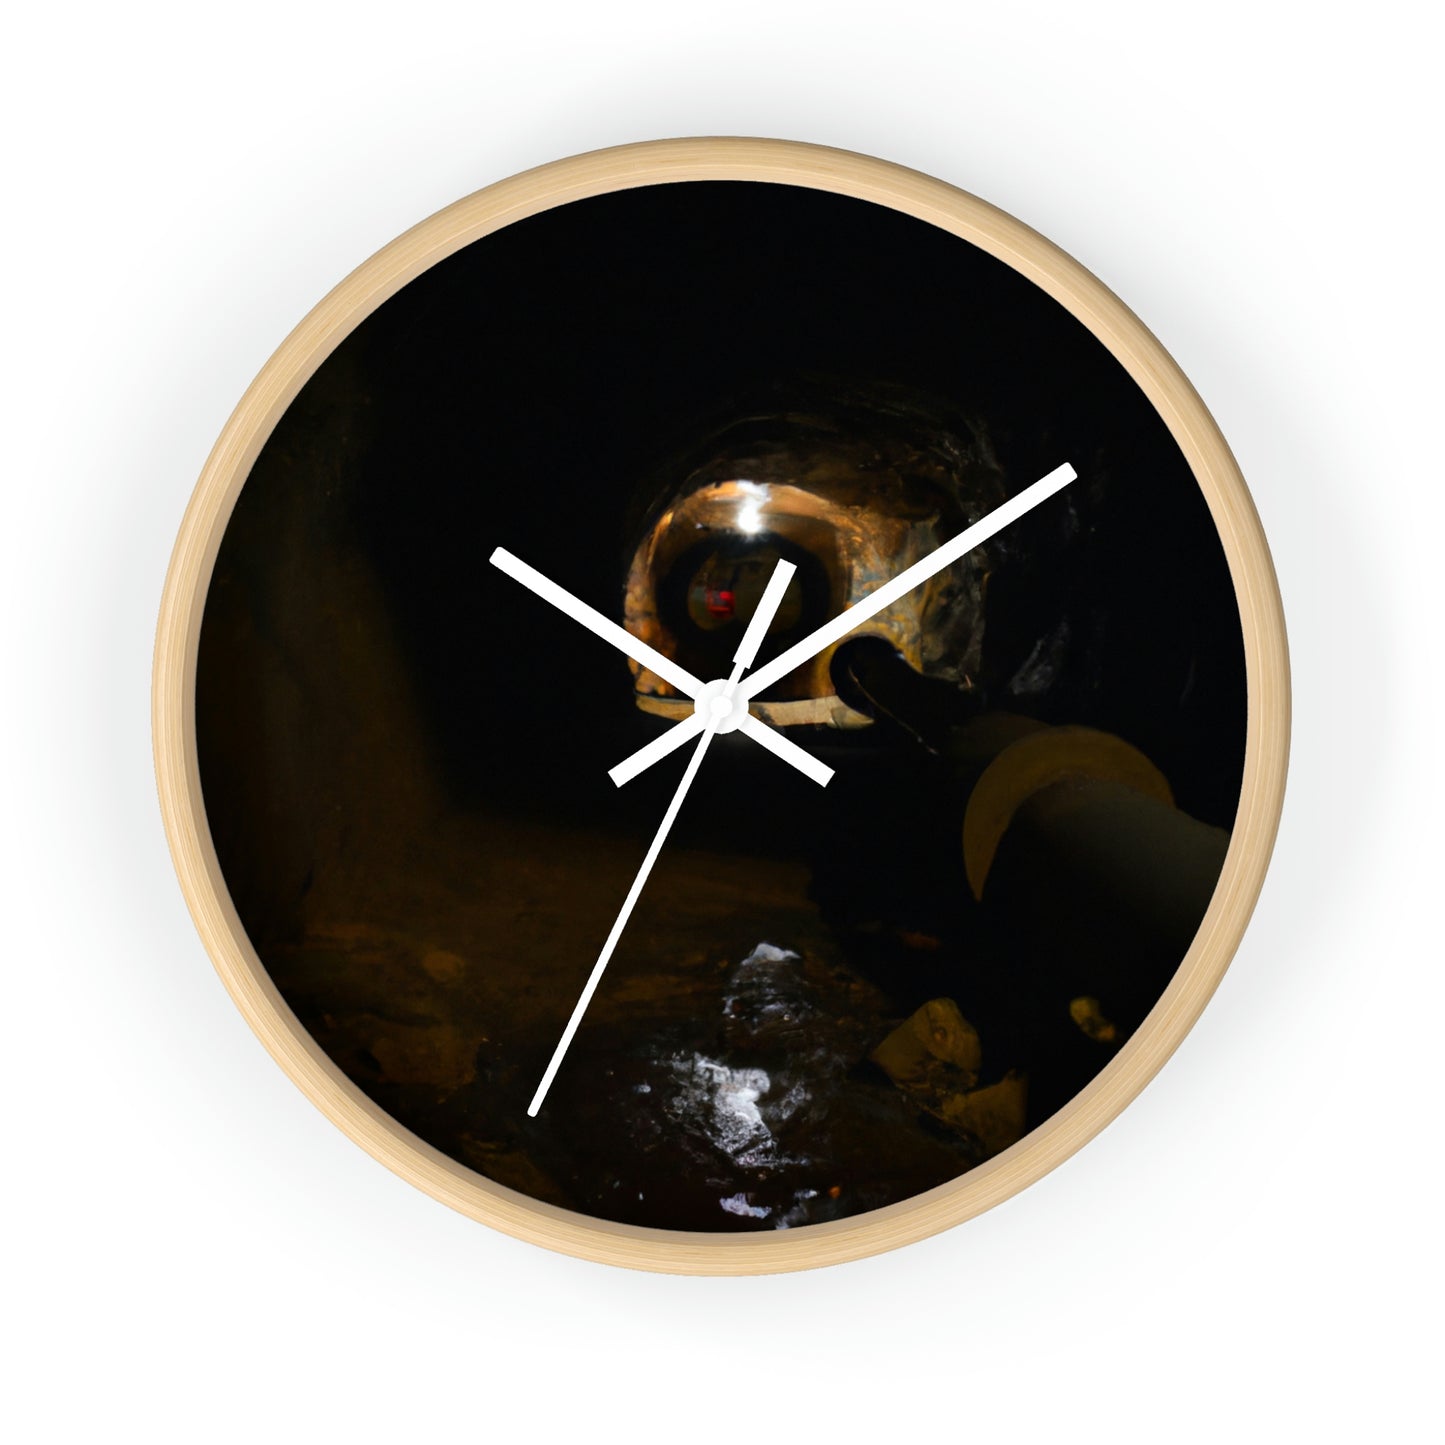 El misterioso reino subterráneo: el reloj de pared alienígena